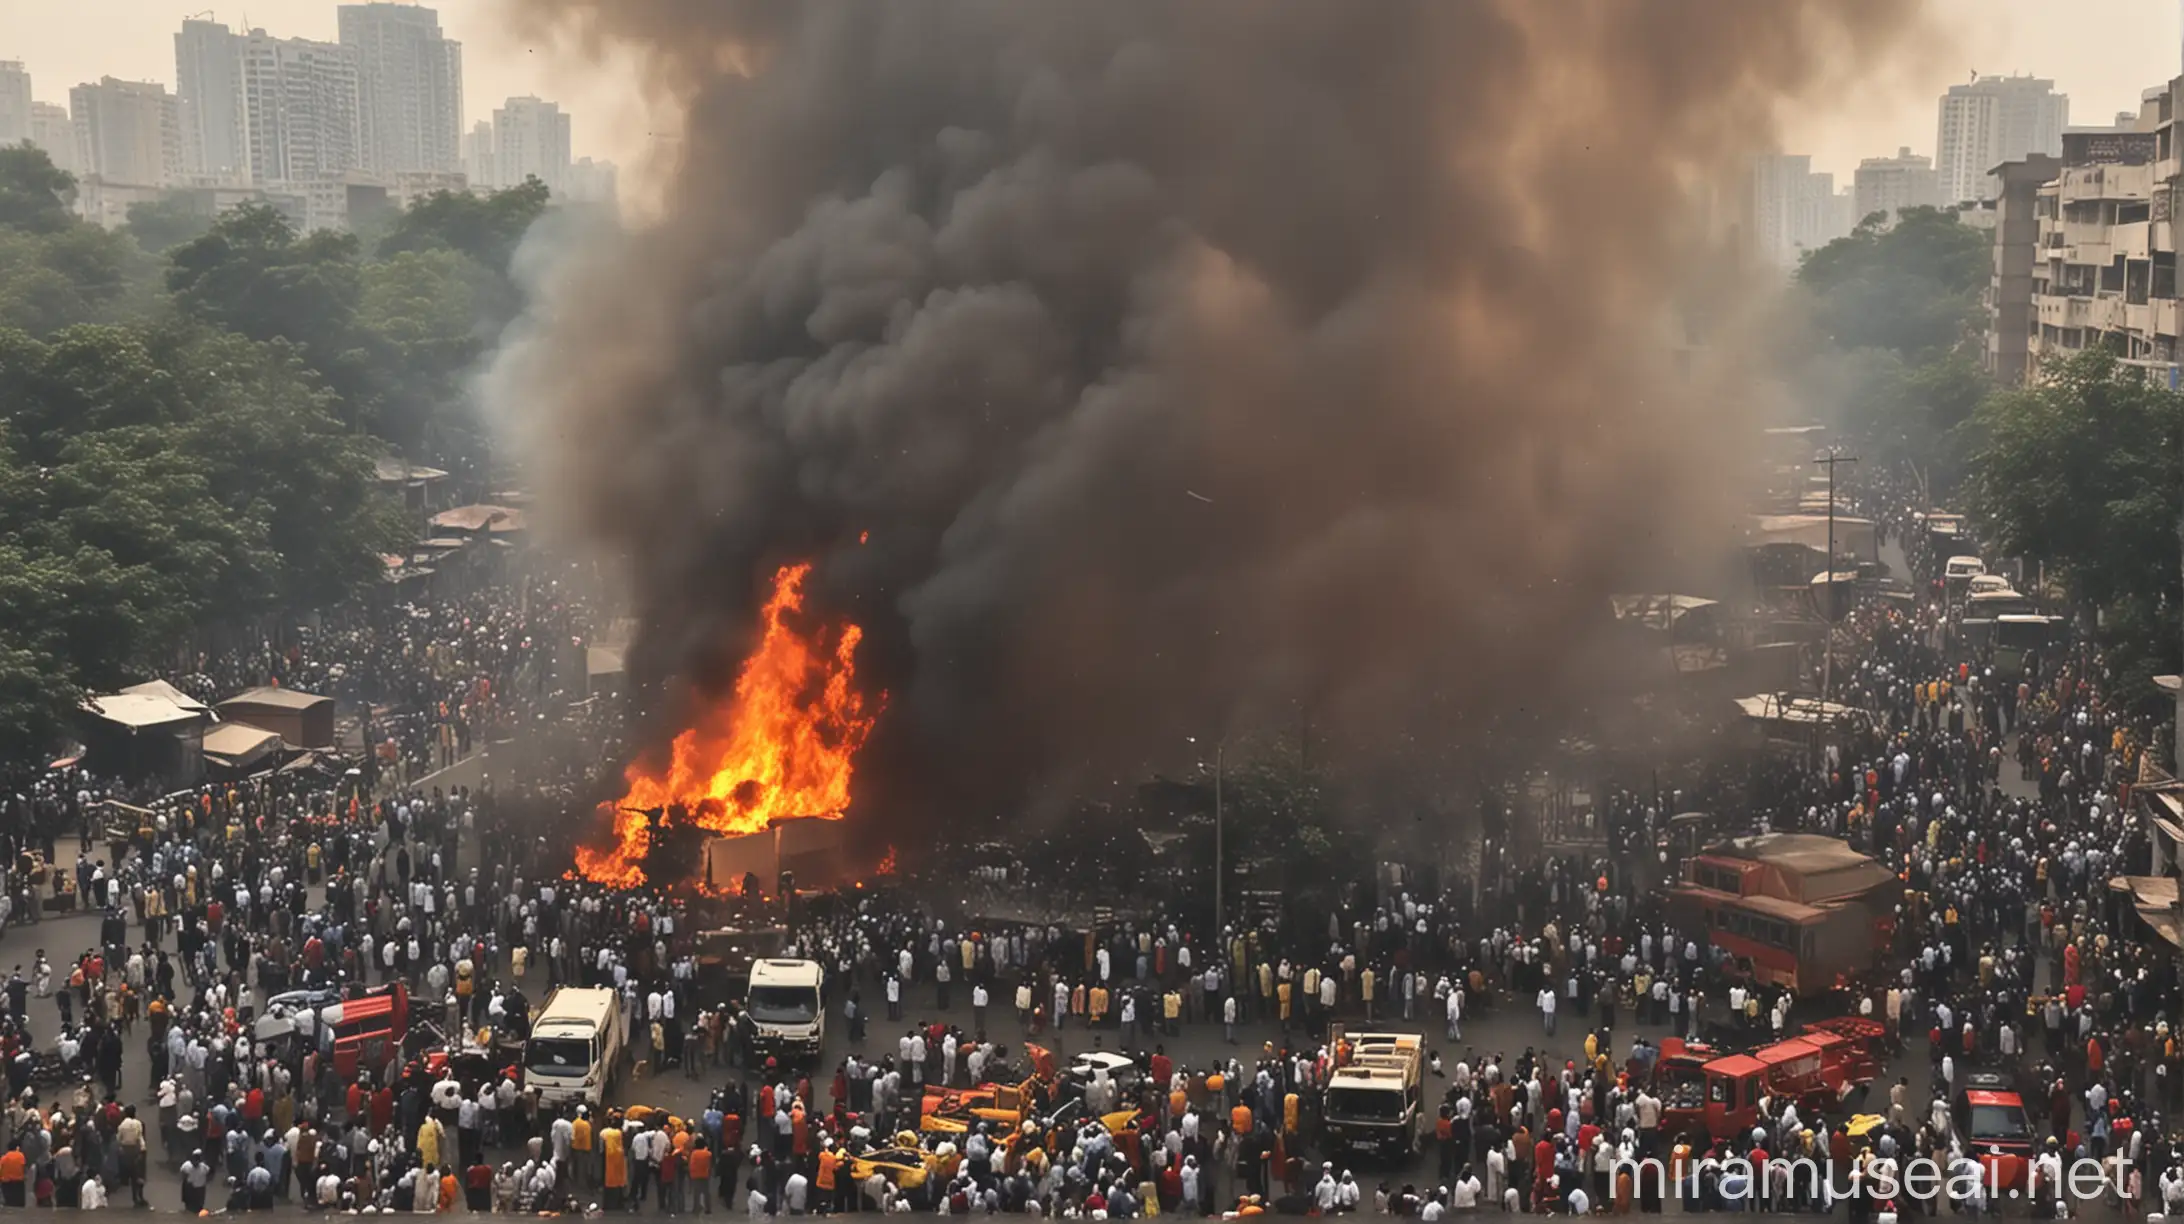 Fiery Blast in Mumbai Area